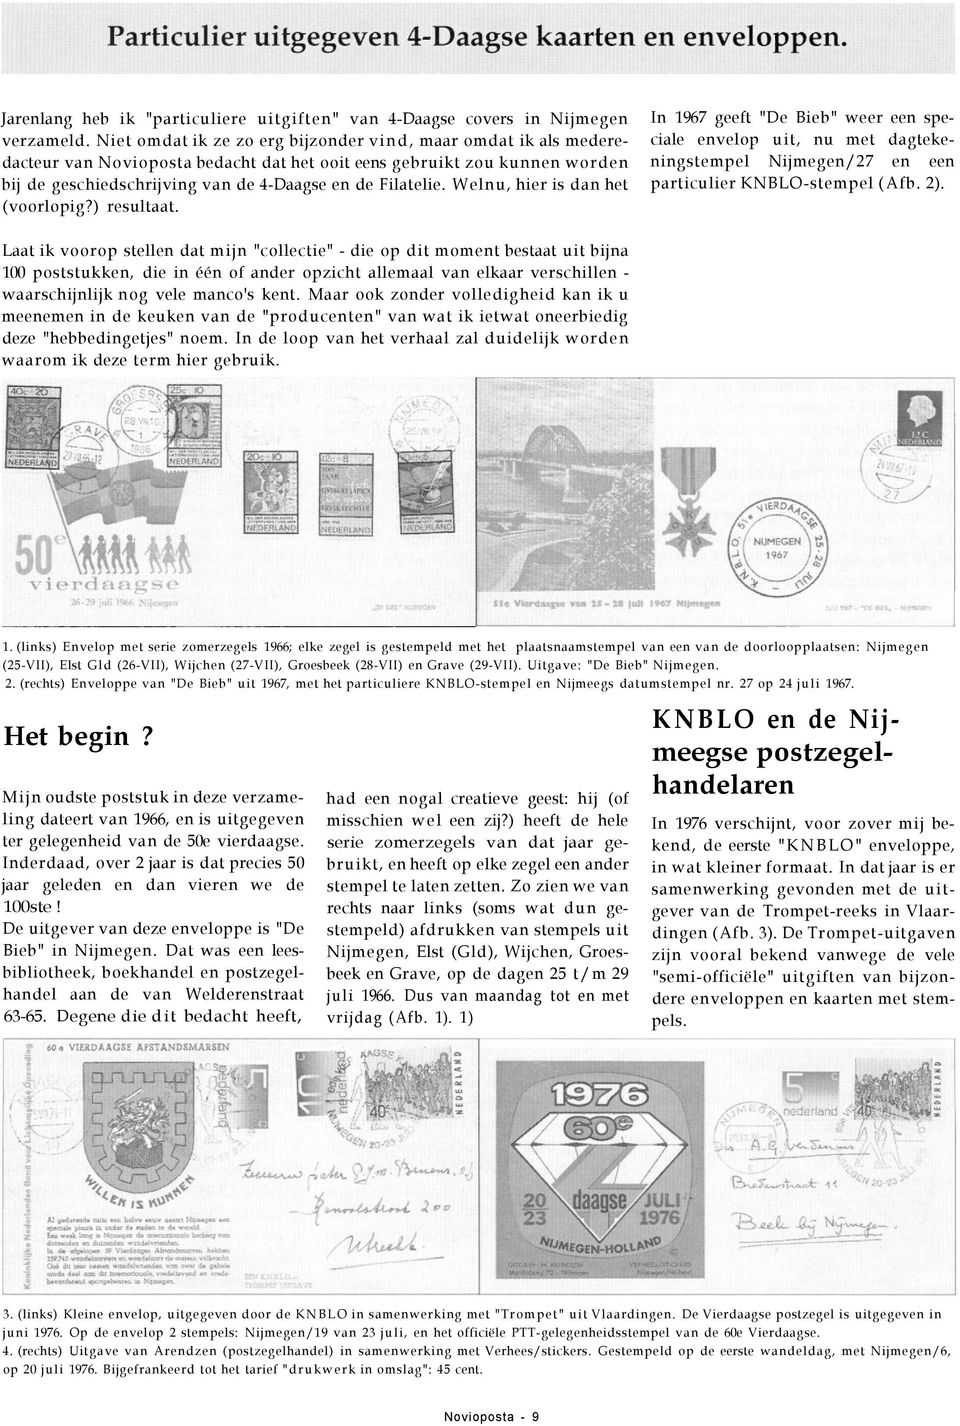 Welnu, hier is dan het (voorlopig?) resultaat. In 1967 geeft "De Bieb" weer een speciale envelop uit, nu met dagtekeningstempel Nijmegen/27 en een particulier KNBLO-stempel (Afb. 2).